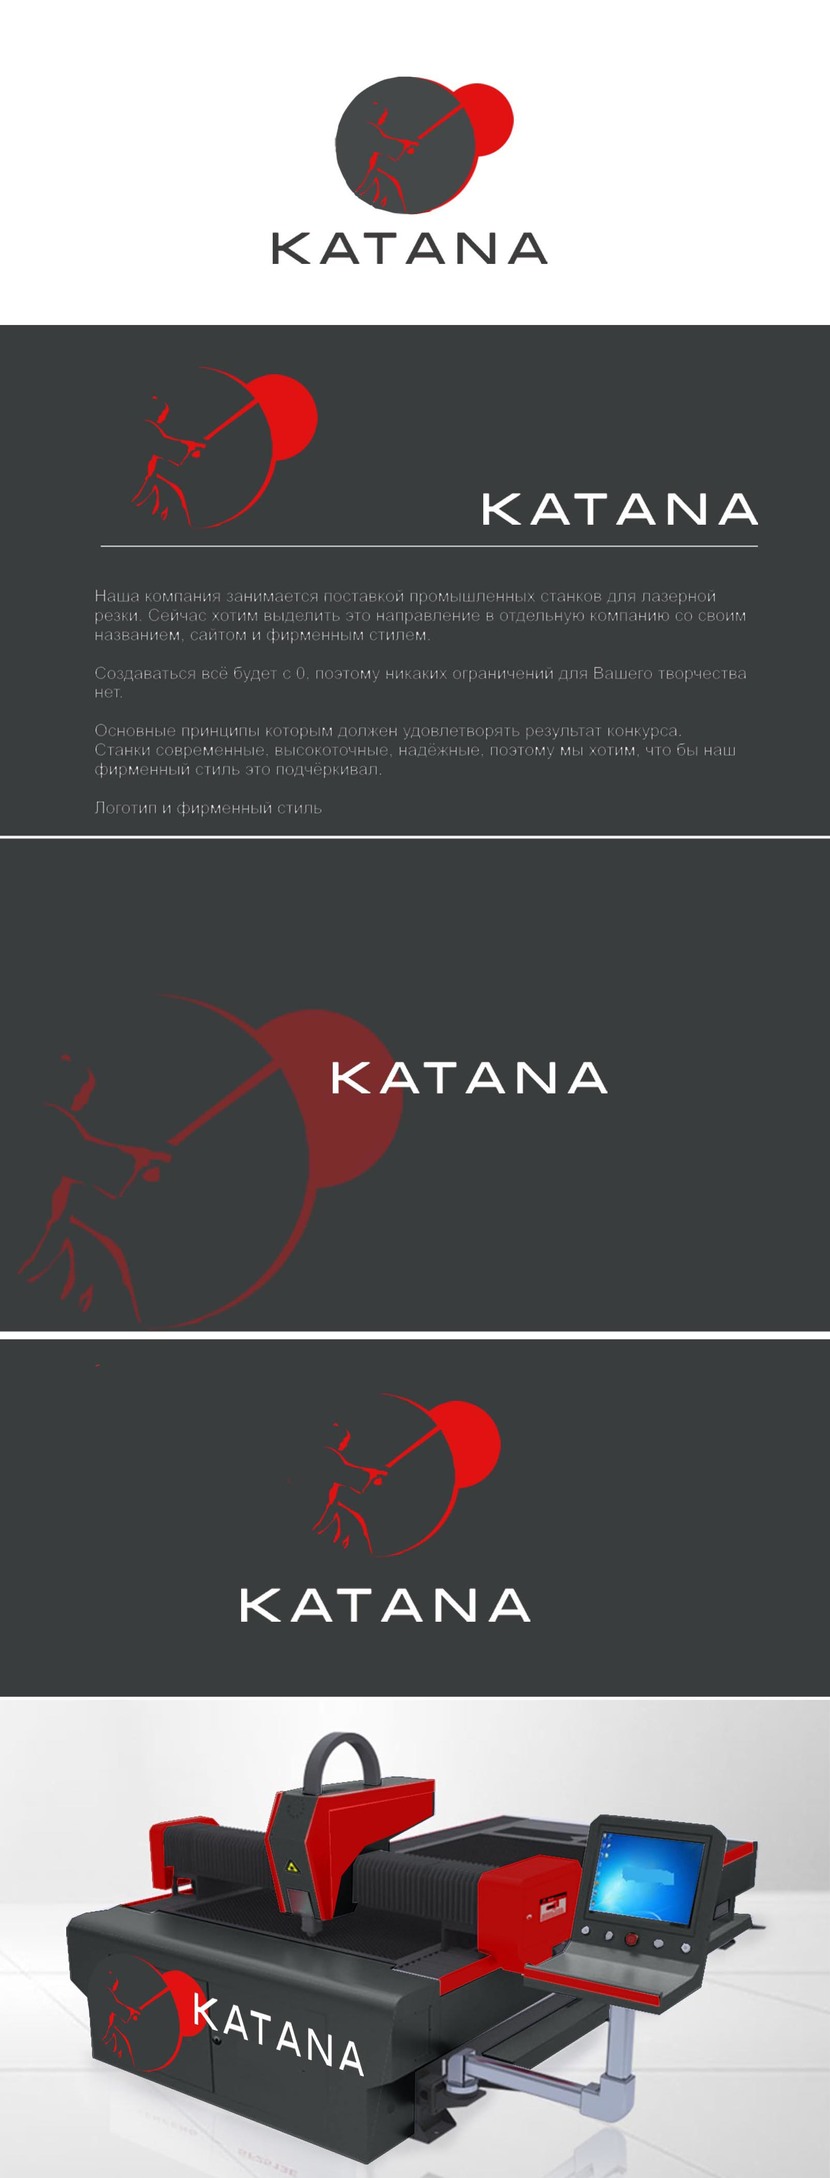 Символическое изображение самурая подобно лазерной разметке, его катана символизирует сам пучок лазера, а красный круг солнца, как атрибут Японии, символизирует точку прицела лазера. - Разработка логотипа и фирменного стиля